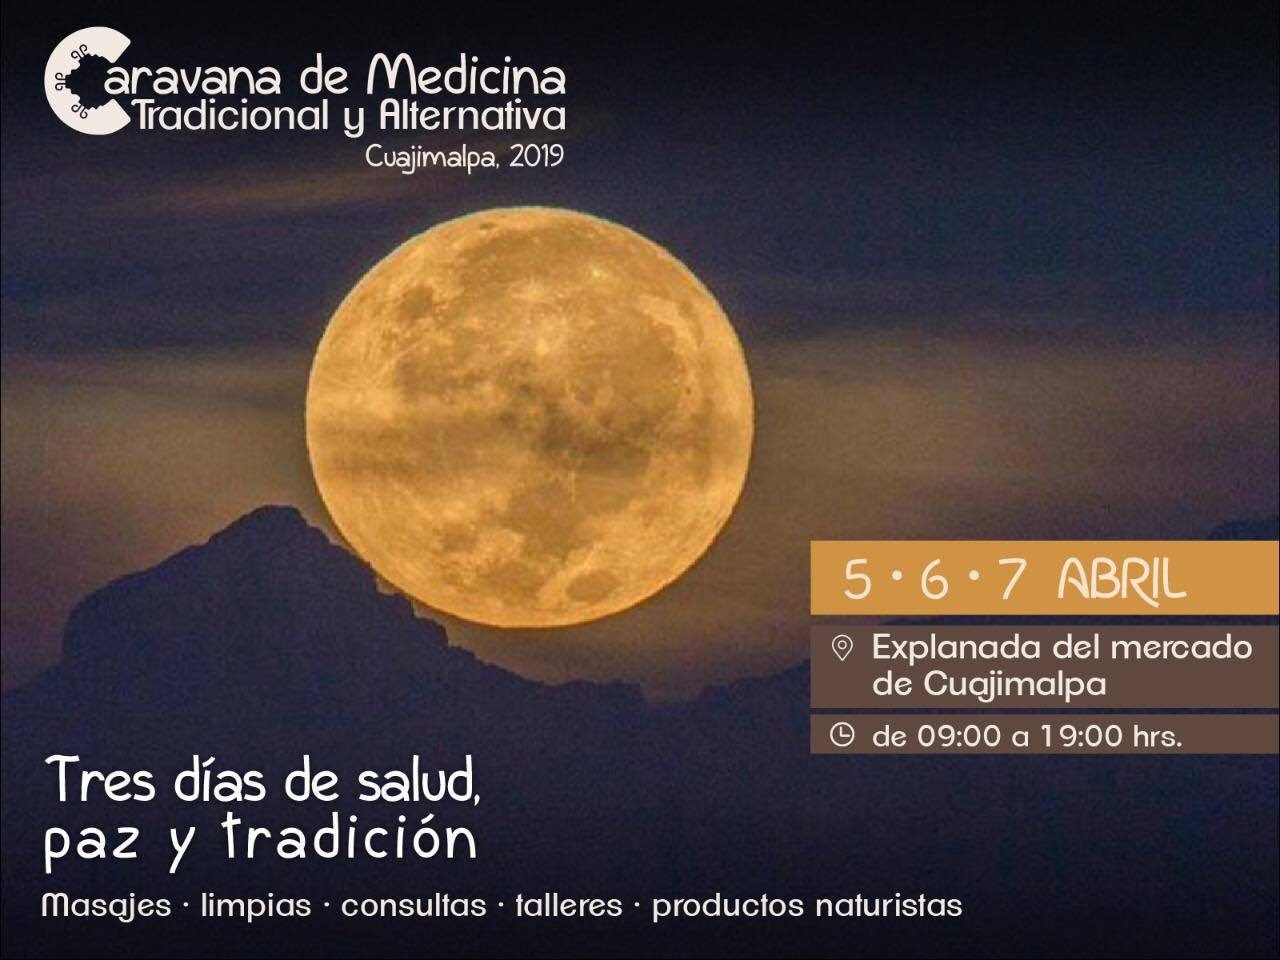 Llega la Caravana de Medicina Tradicional y Alternativa a Cuajimalpa